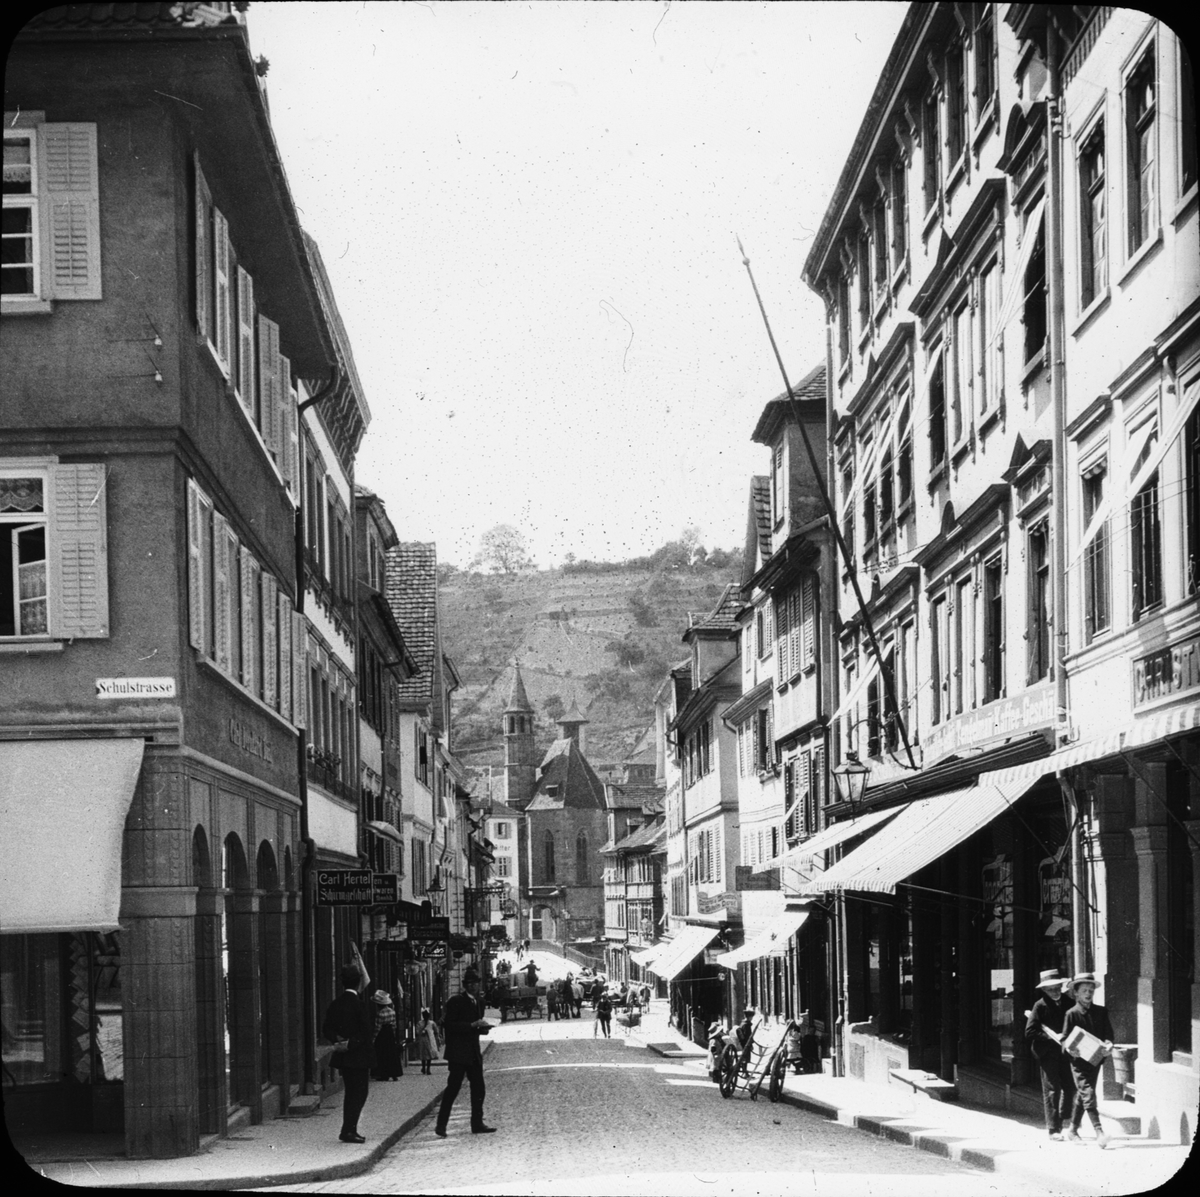 Skioptikonbild med motiv från gatan Neue Strasse, Schwäbisch Hall.
Bilden har förvarats i kartong märkt: Resan Schwäbisch  Hall 9. XIV. Text på bild: "Neue Strasse".